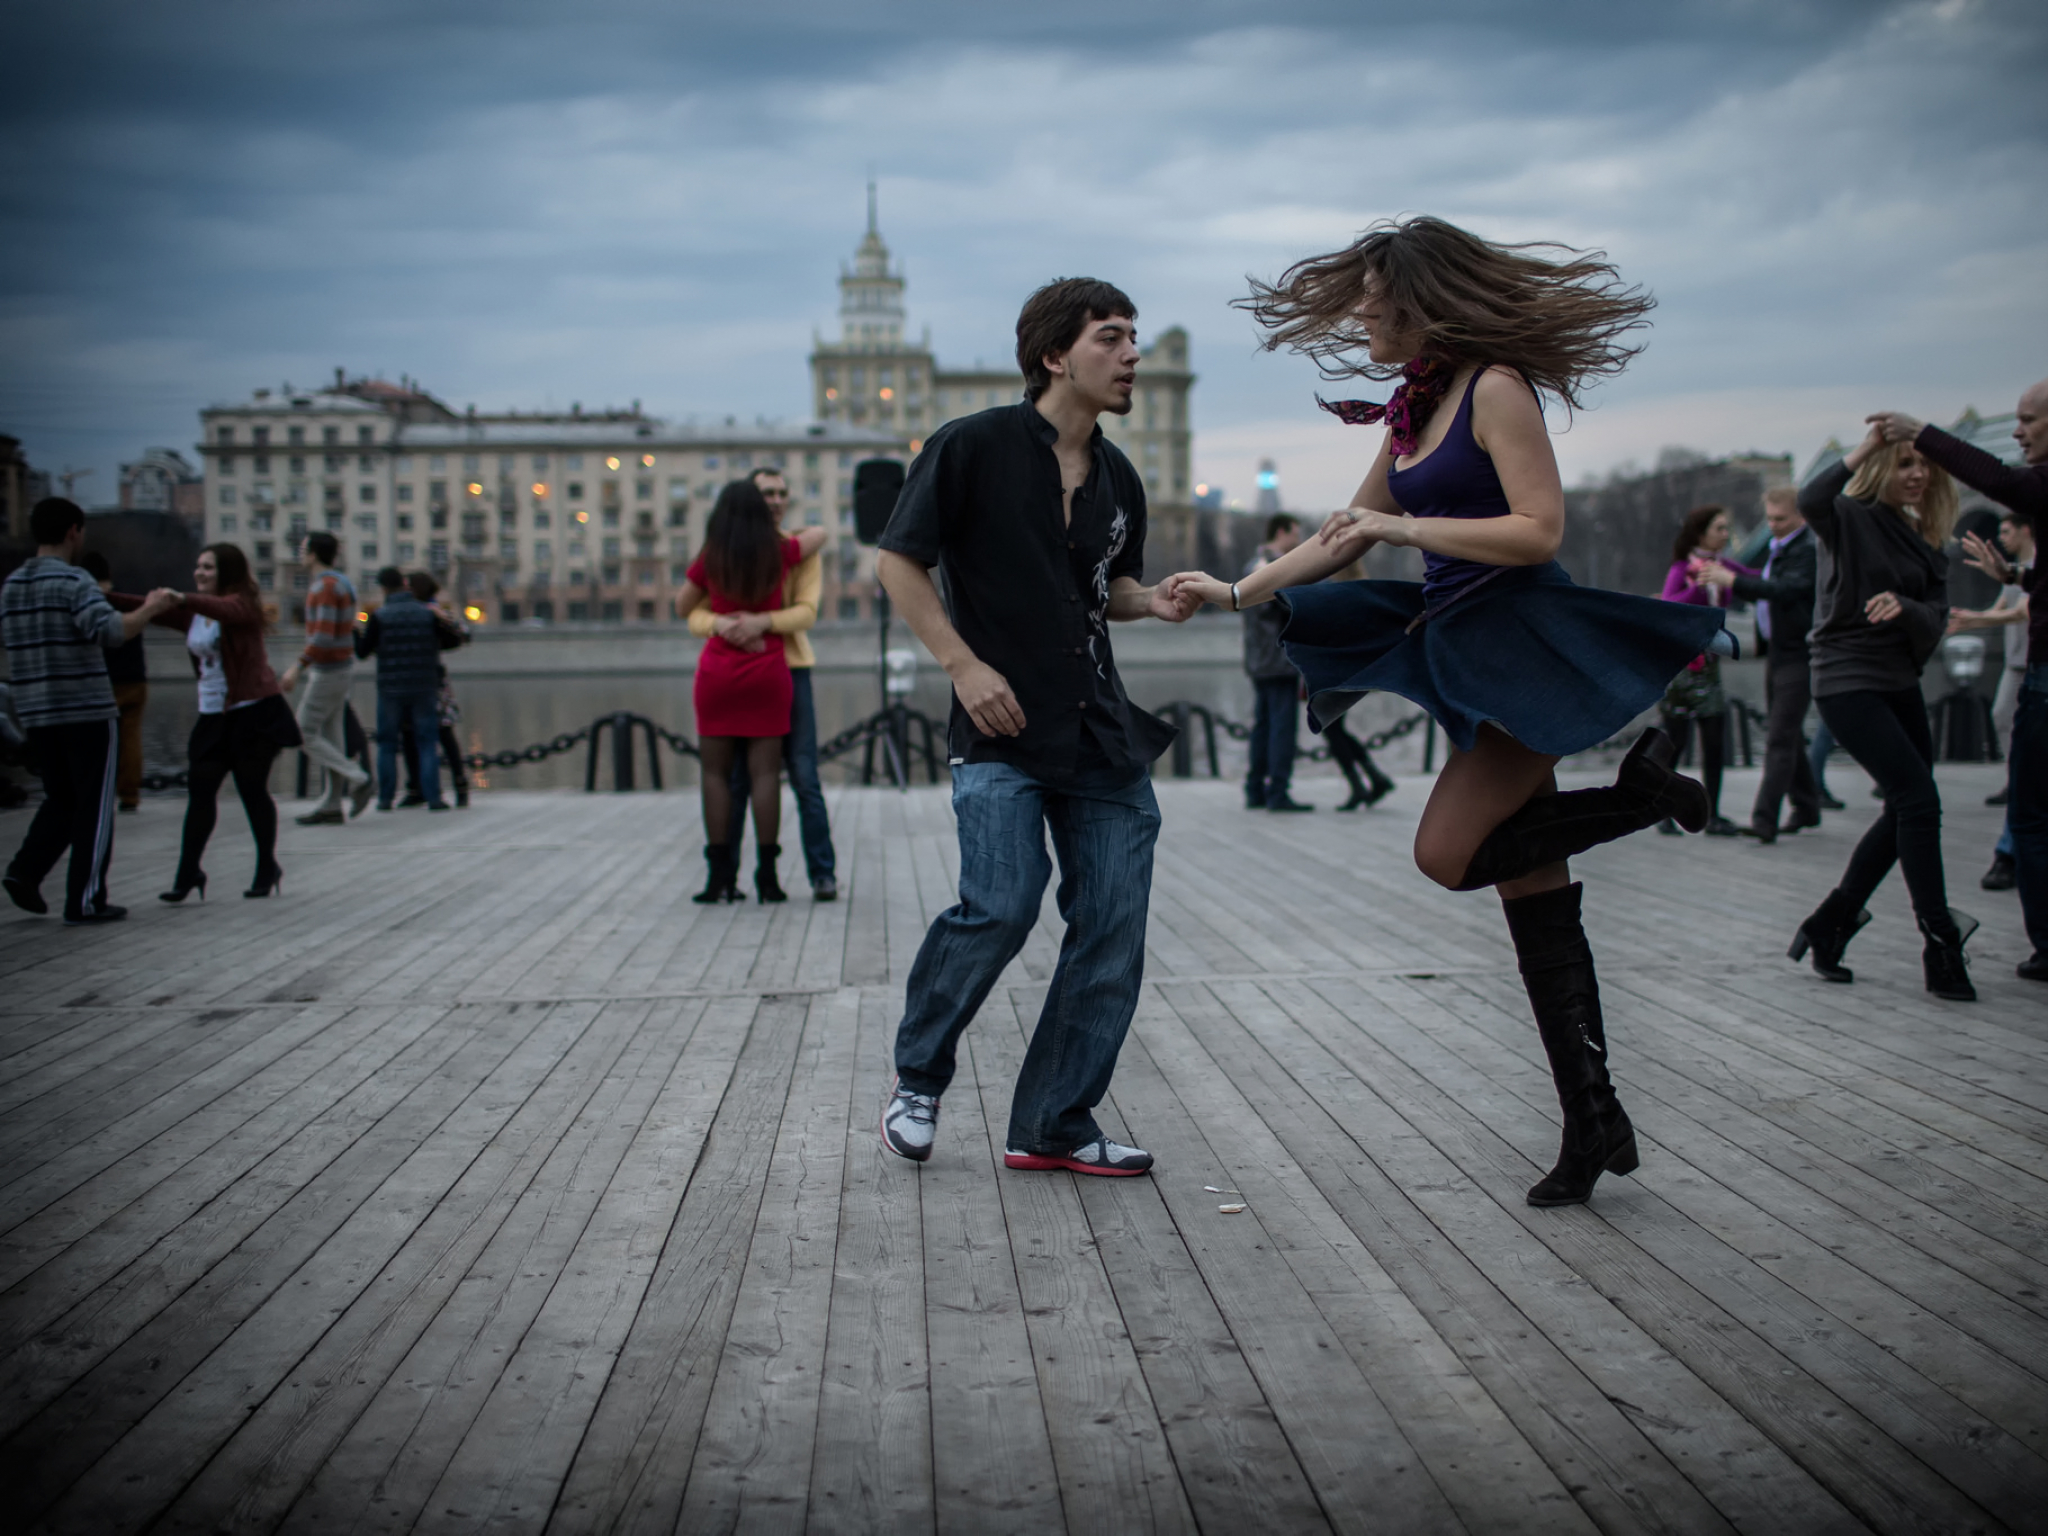 Wife dancing. Люди танцуют. Танцы на улице. Парень и девушка танцуют. Танцующие люди на улице.